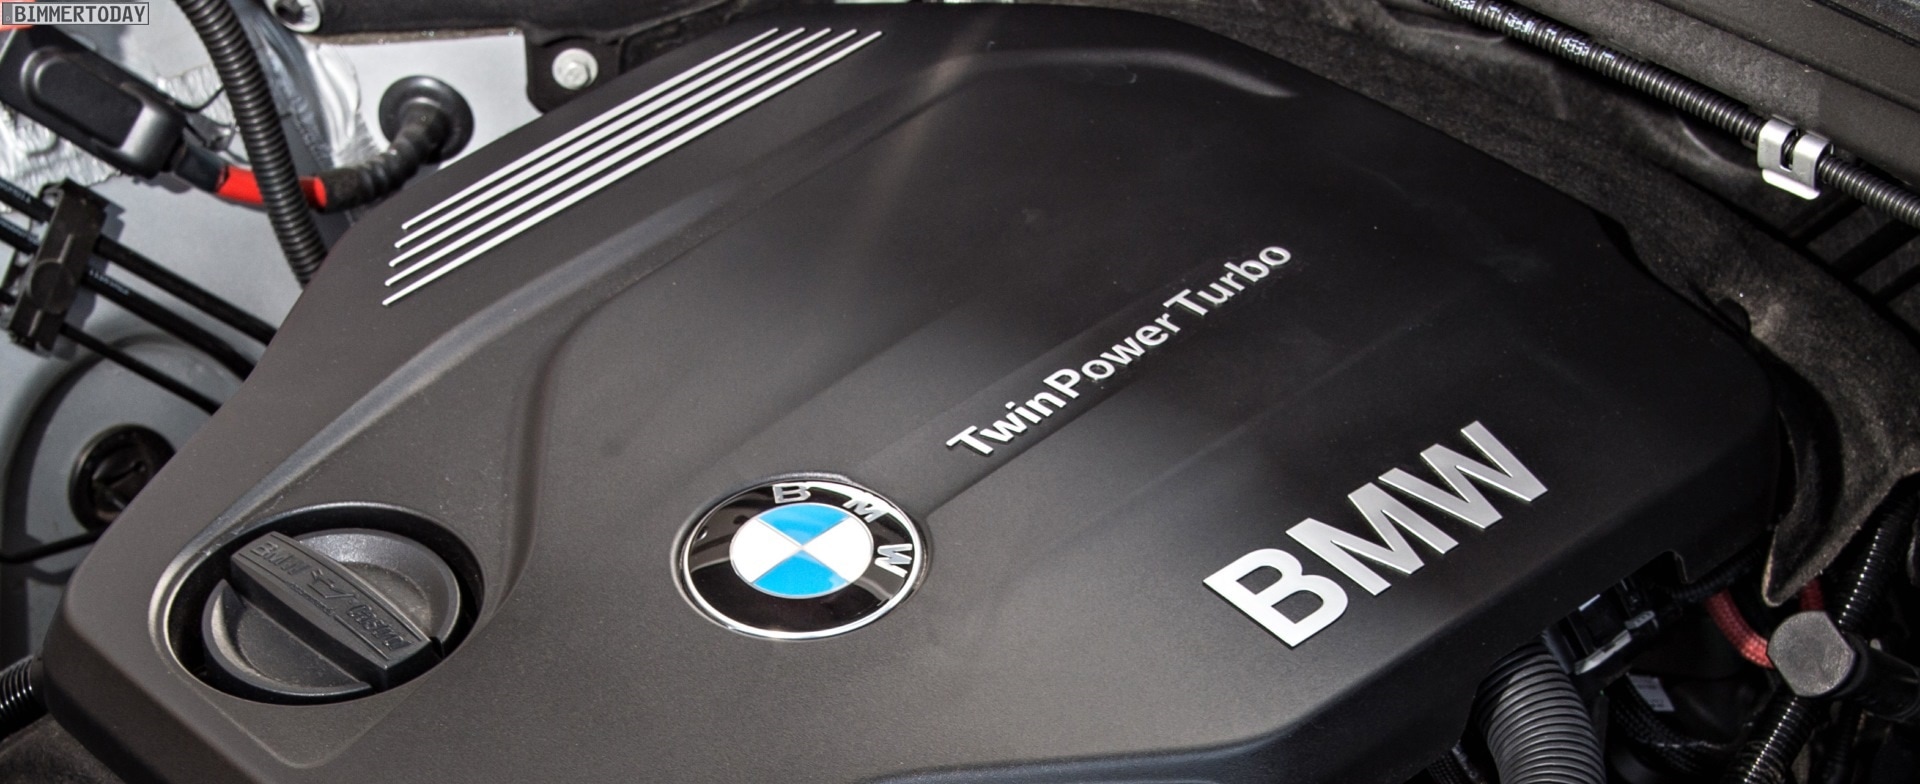 BMW Diesel AdBlue, Heating Element, DPF Service